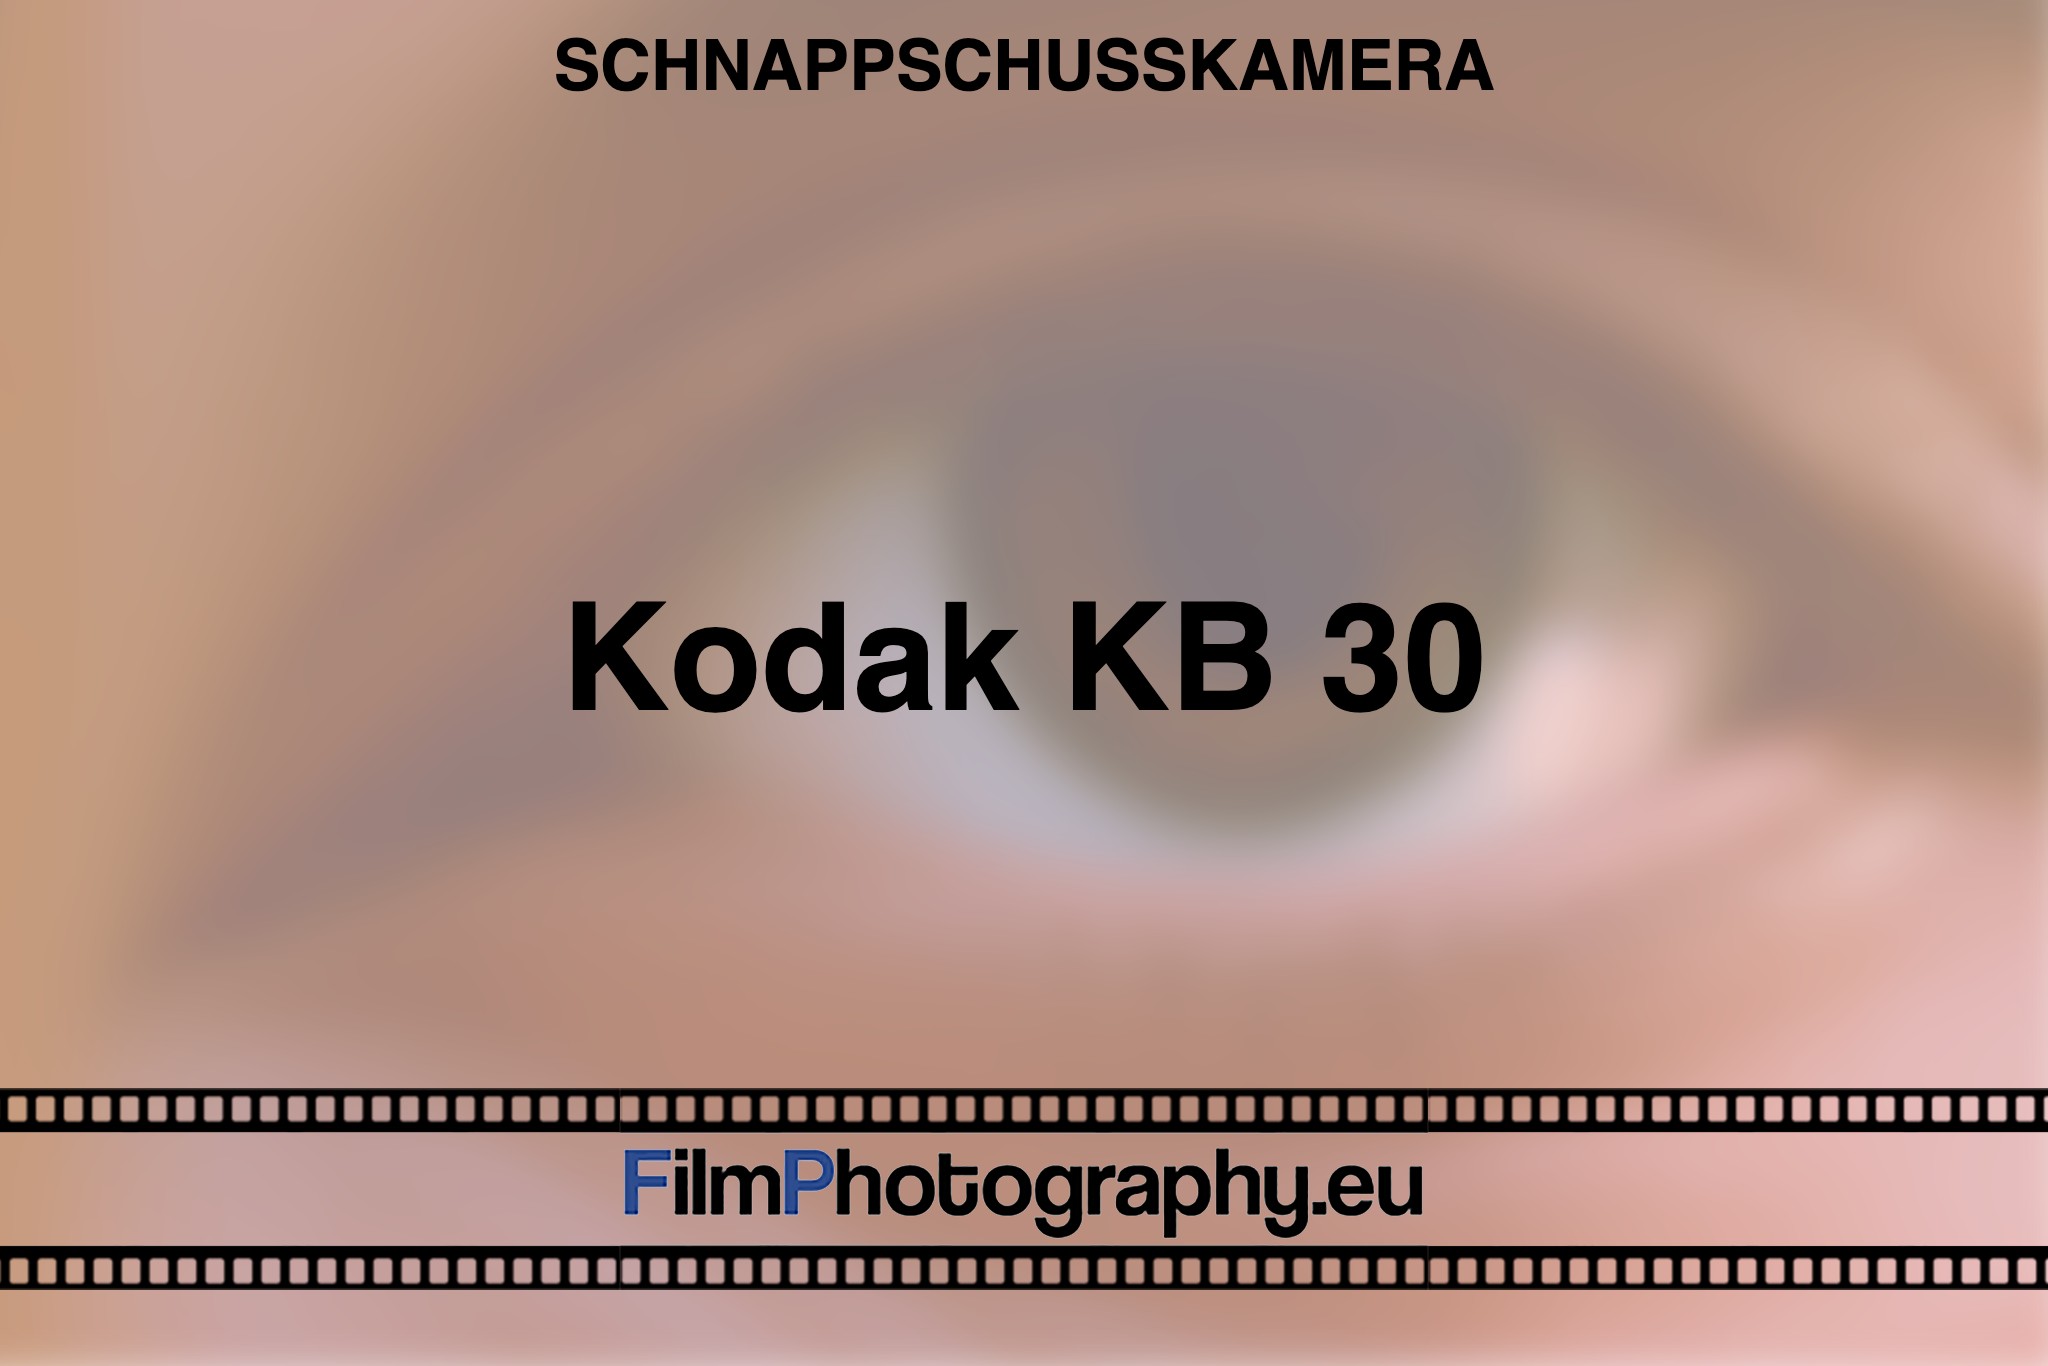 kodak-kb-30-schnappschusskamera-bnv